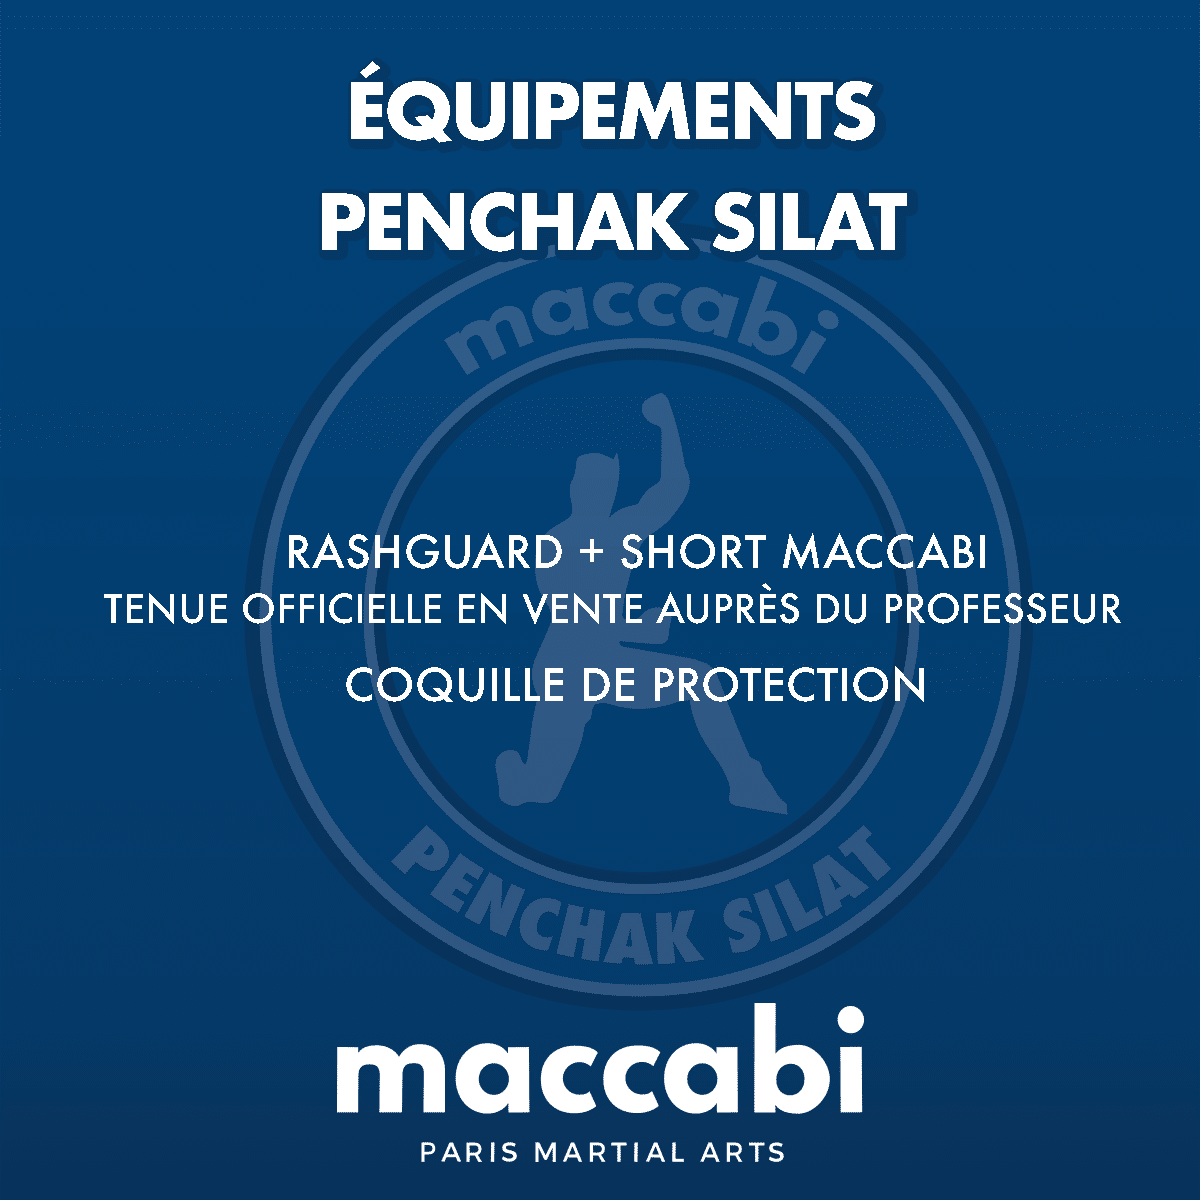 Equipement pour Penchak Silat chez Maccabi Paris